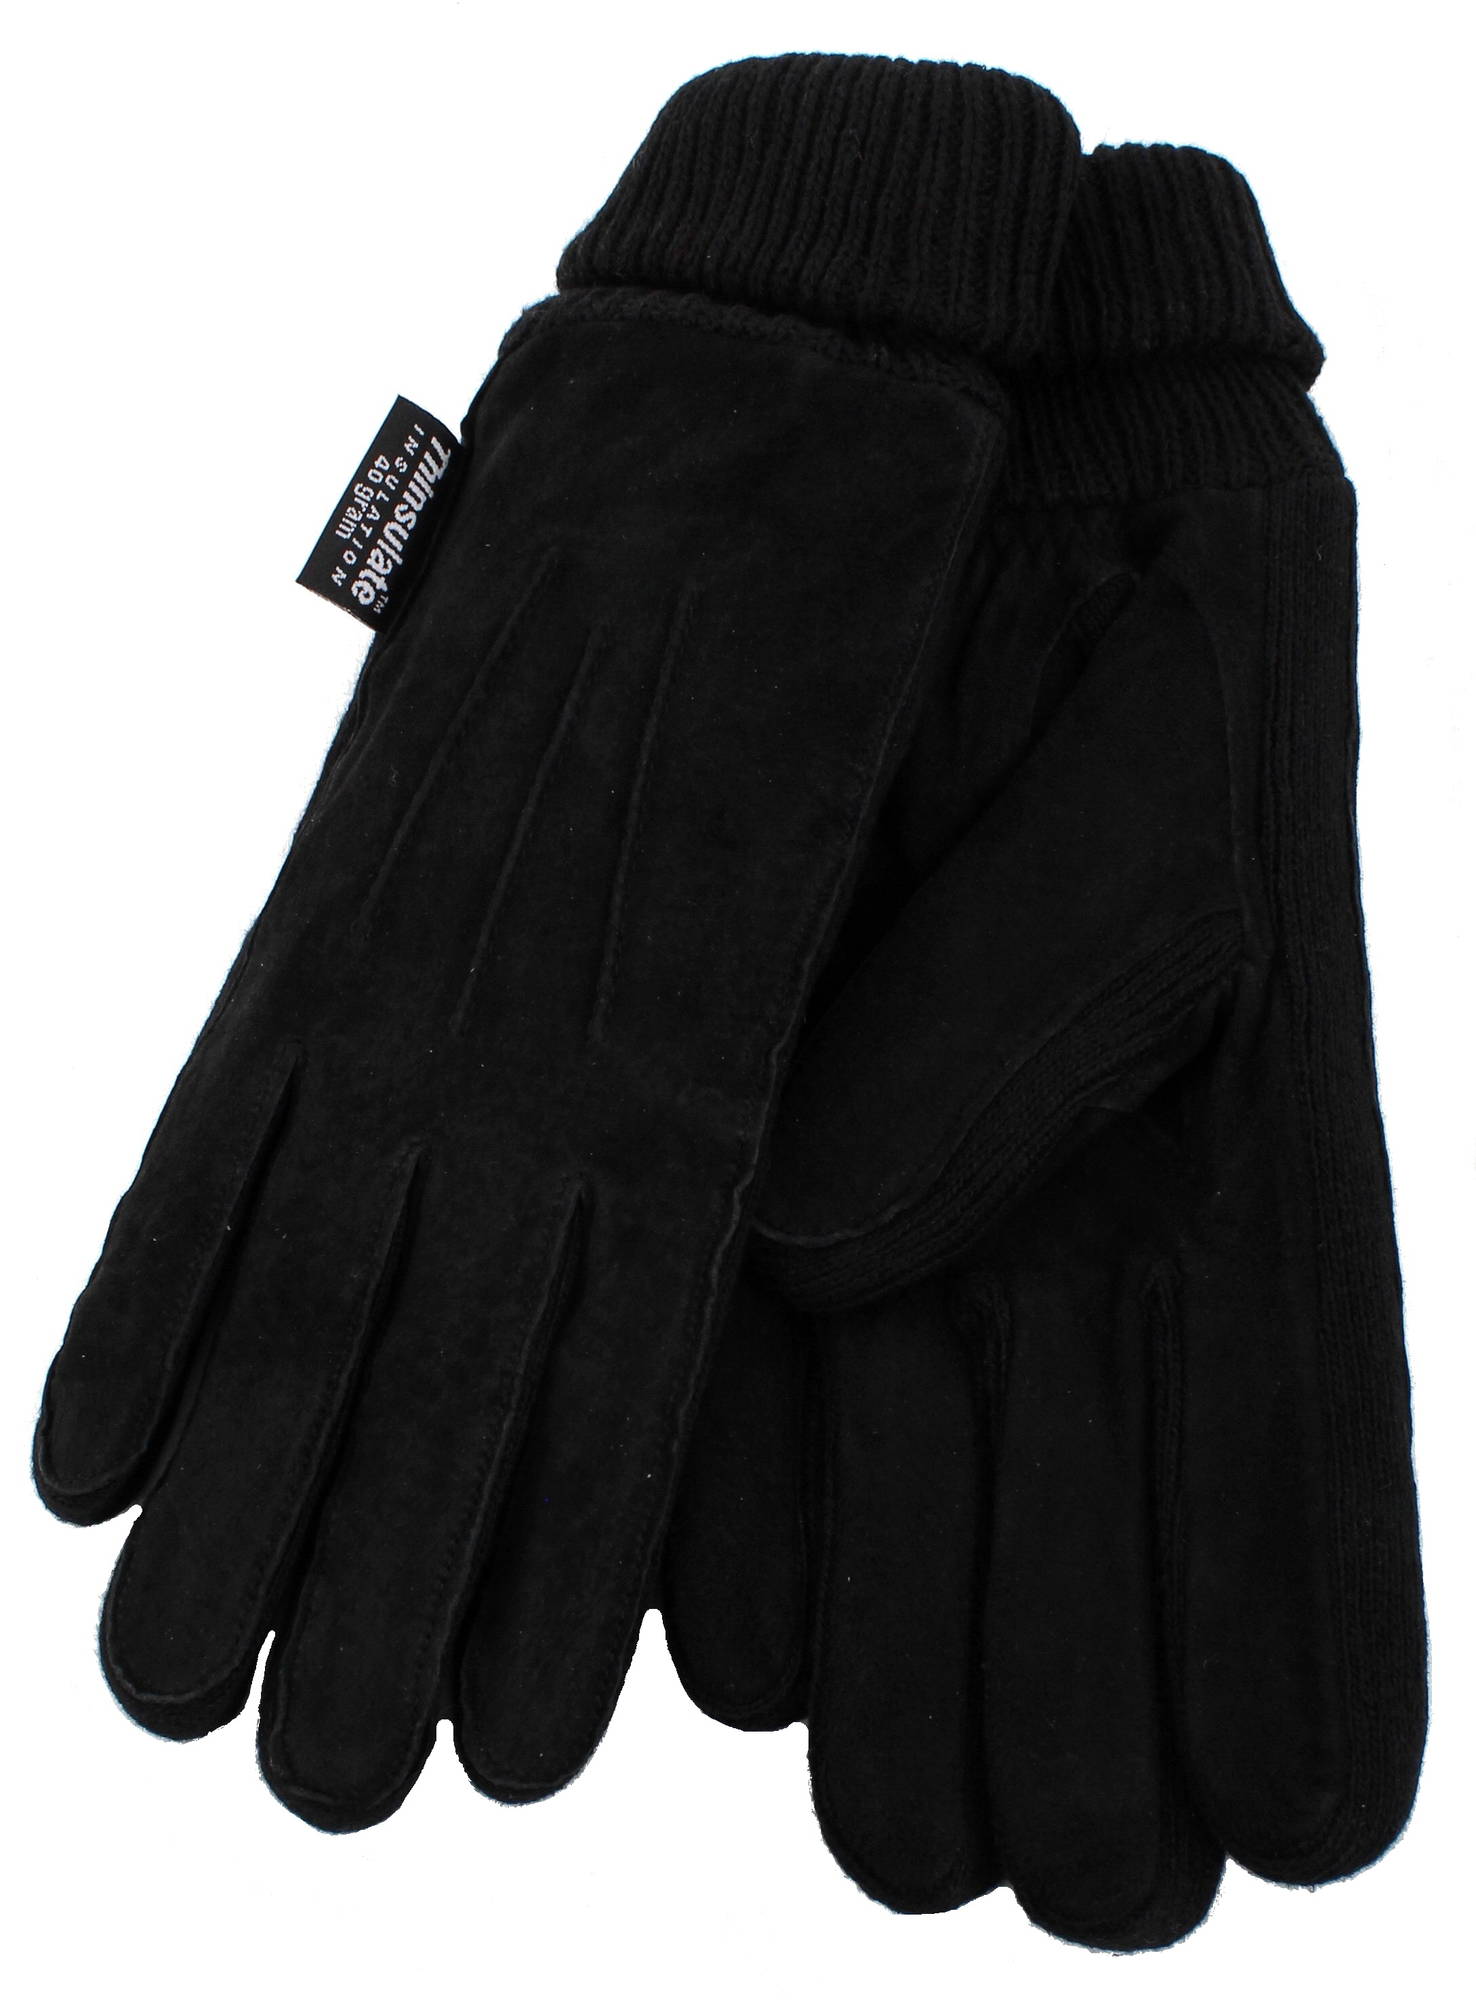 Thinsulate Gloves 2145 - Stilettoshop.eu webstore